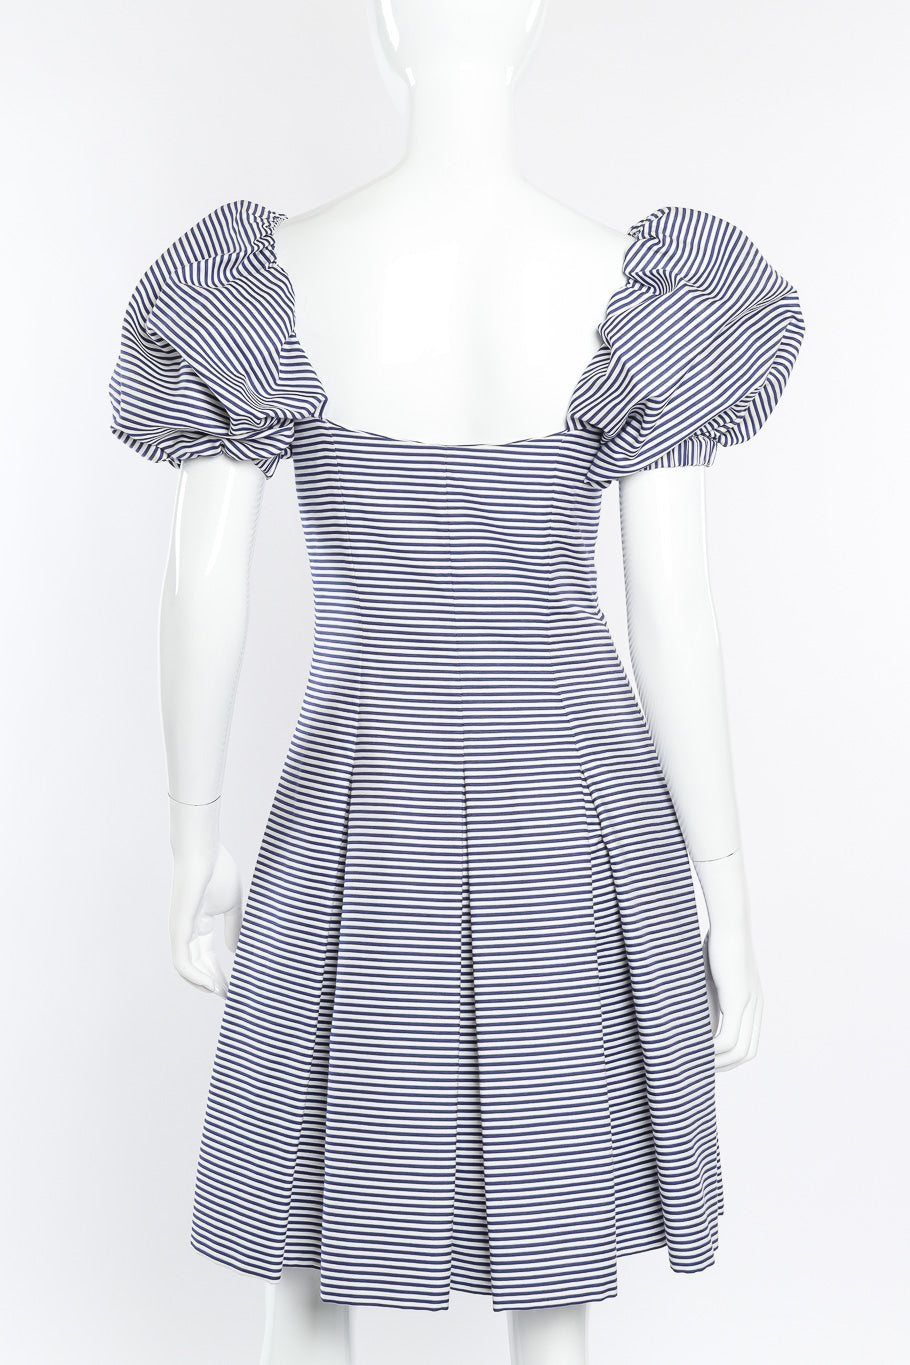 Vintage Yves Saint Laurent Sailor Stripe Corset Dress on mannequin back view @recessla